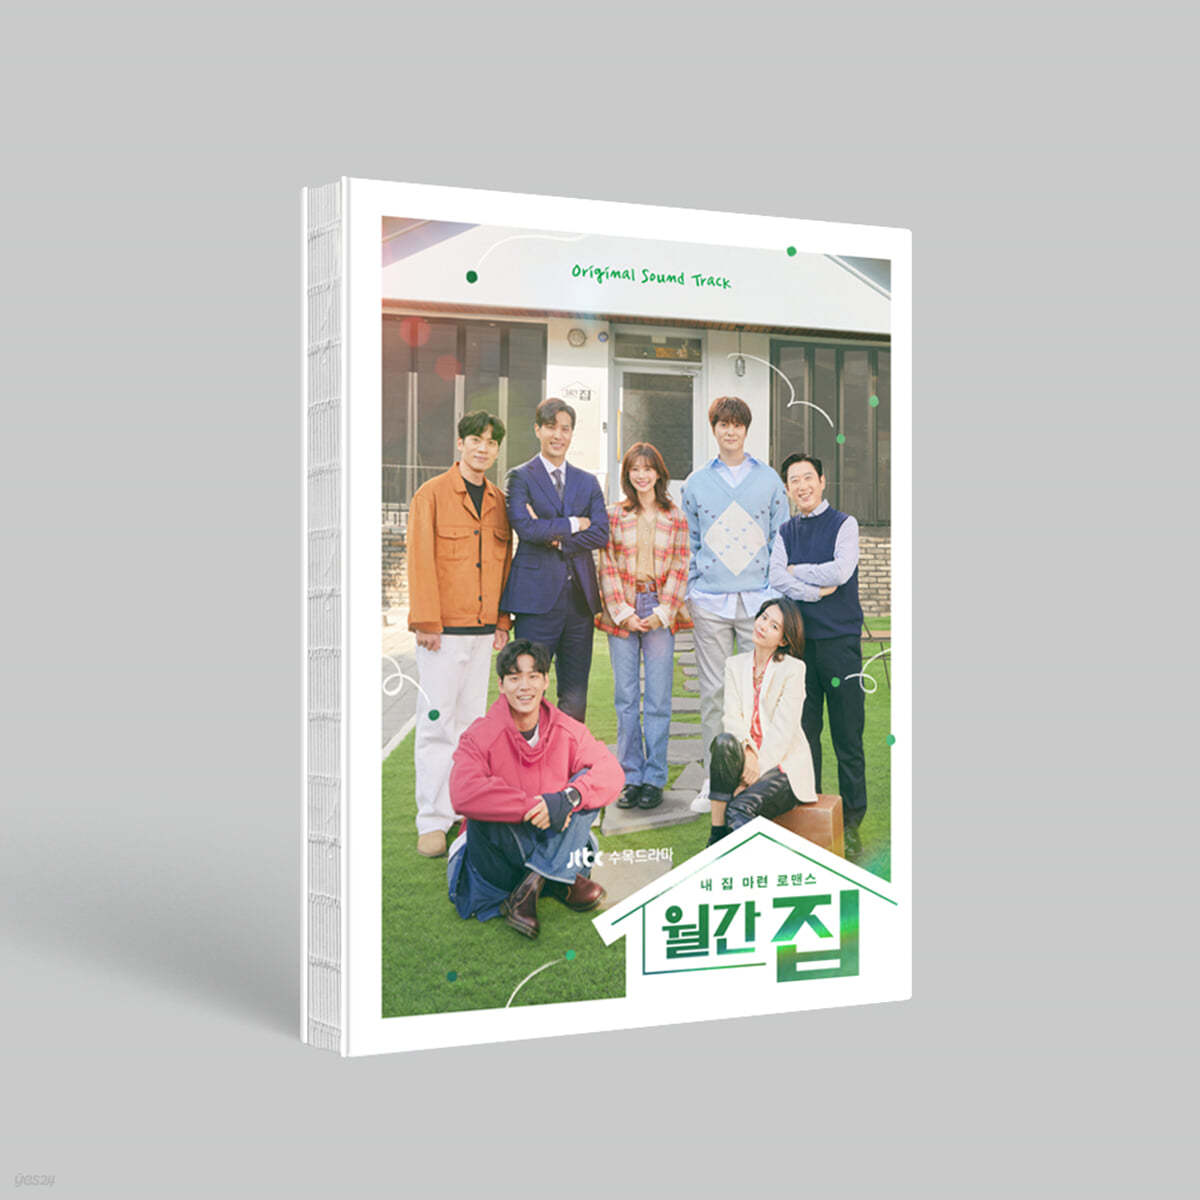 월간집 (JTBC 수목드라마) OST 